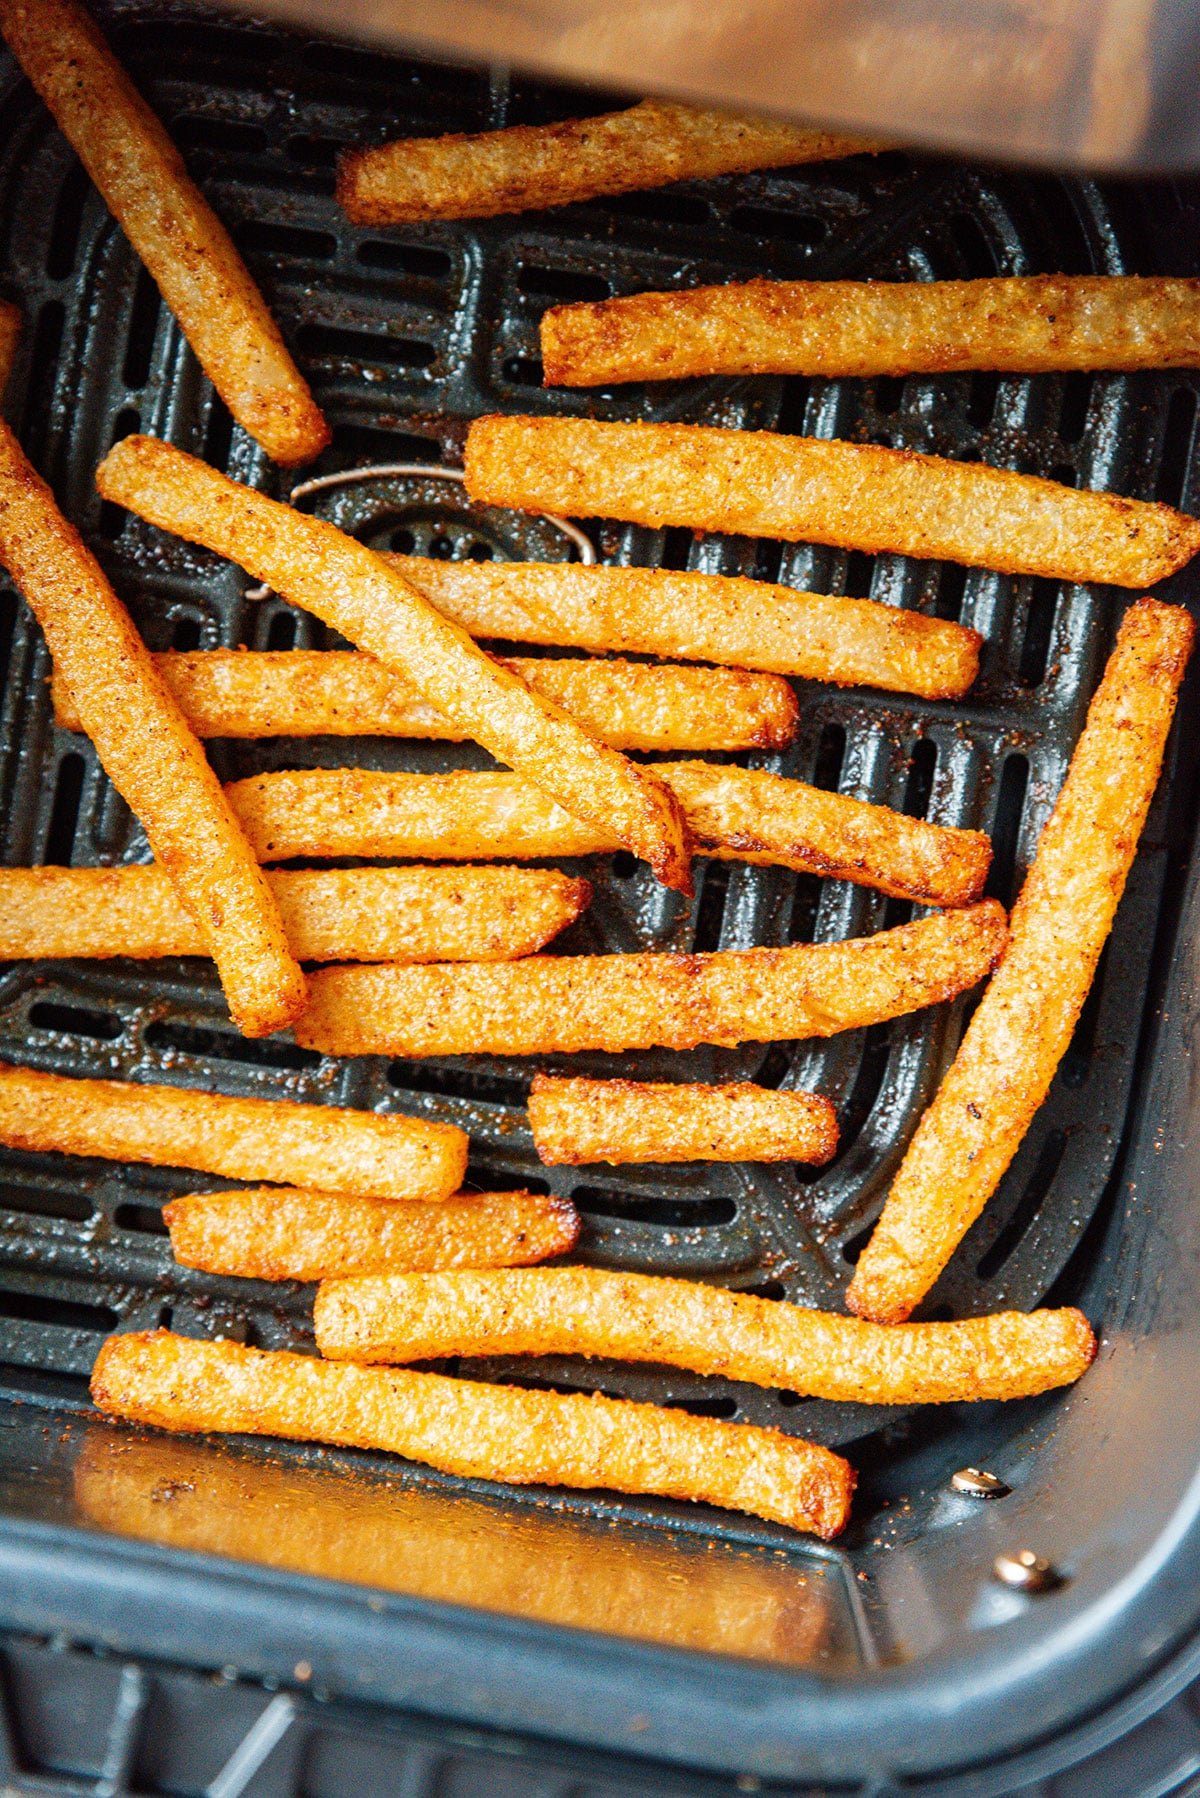 Jicama fries in an air fryer.